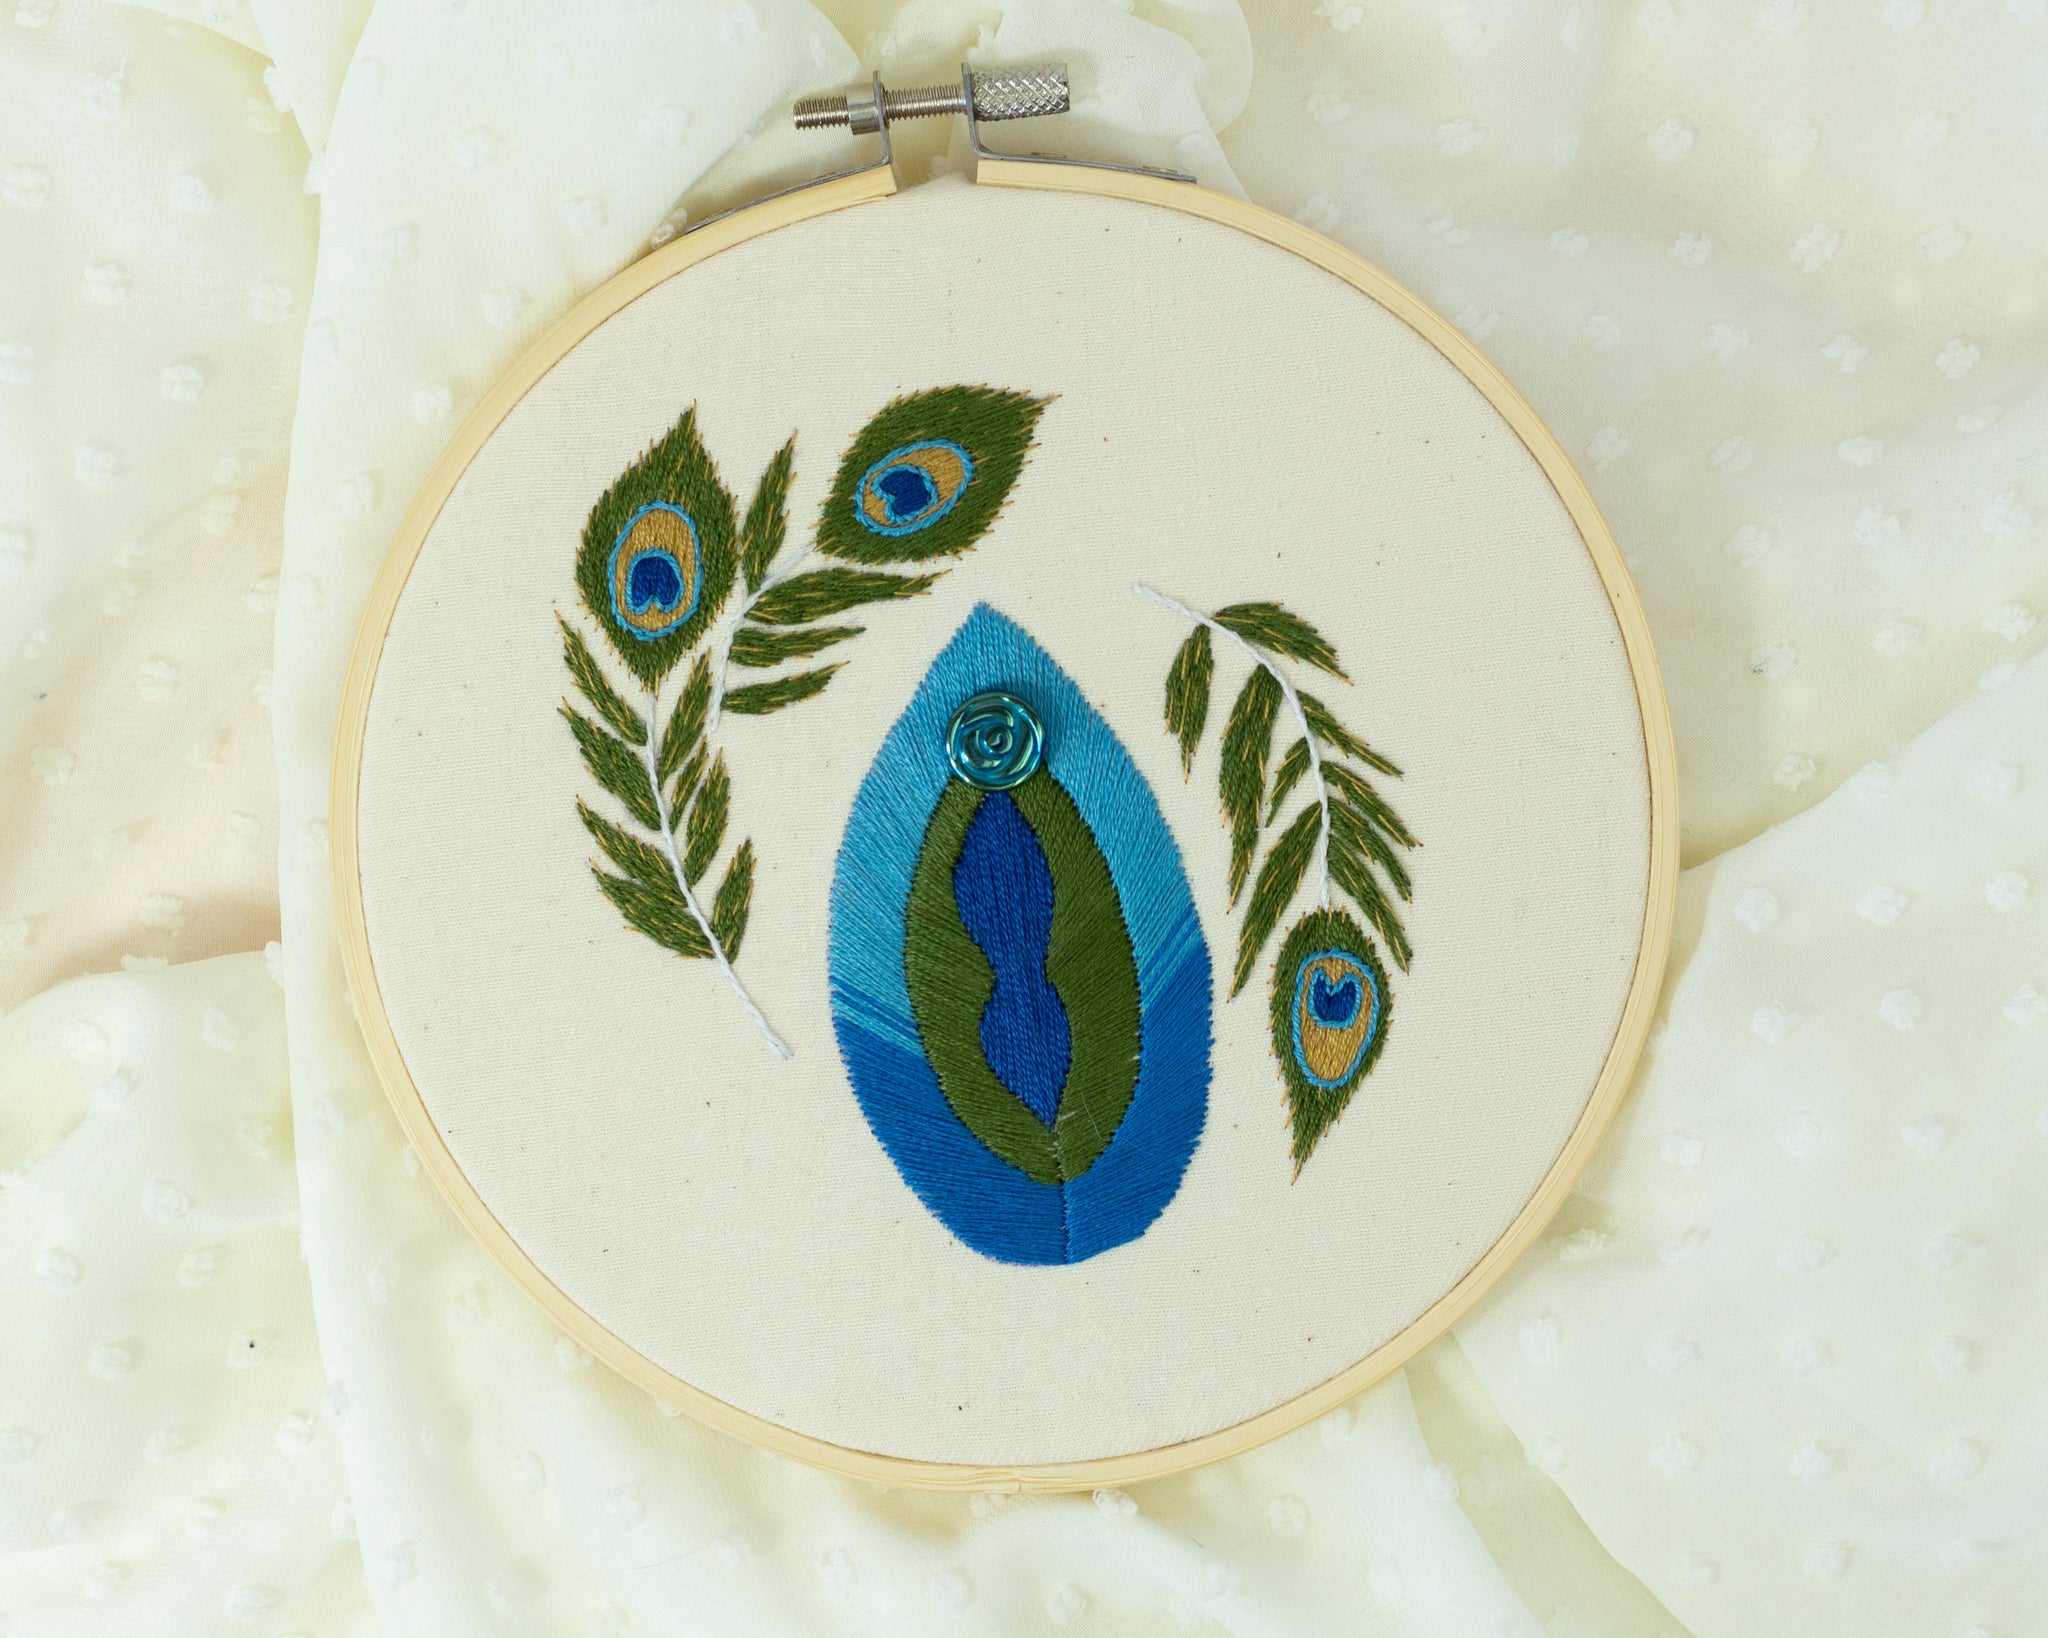 Transgender Vulva Art - Peacock Embroidery